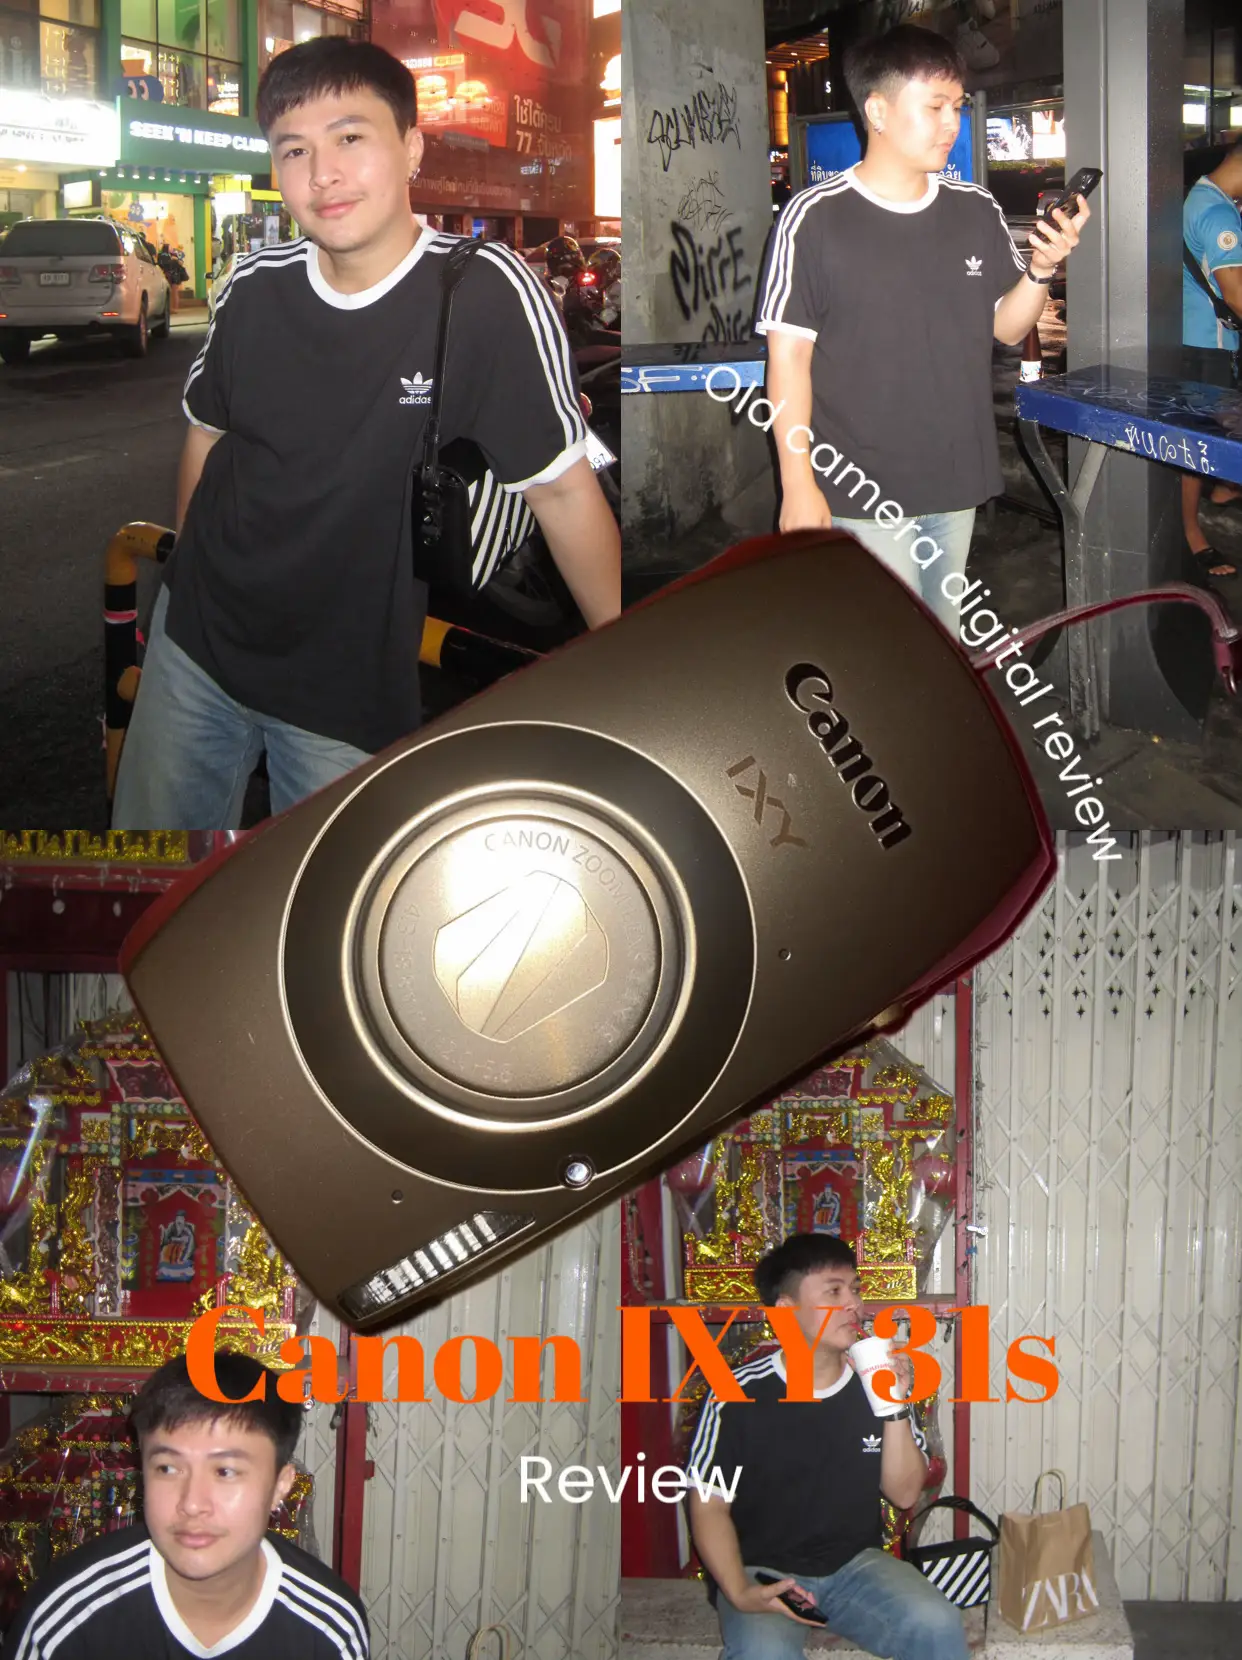 アウトレット販売 Canon IXY 31S BW - カメラ